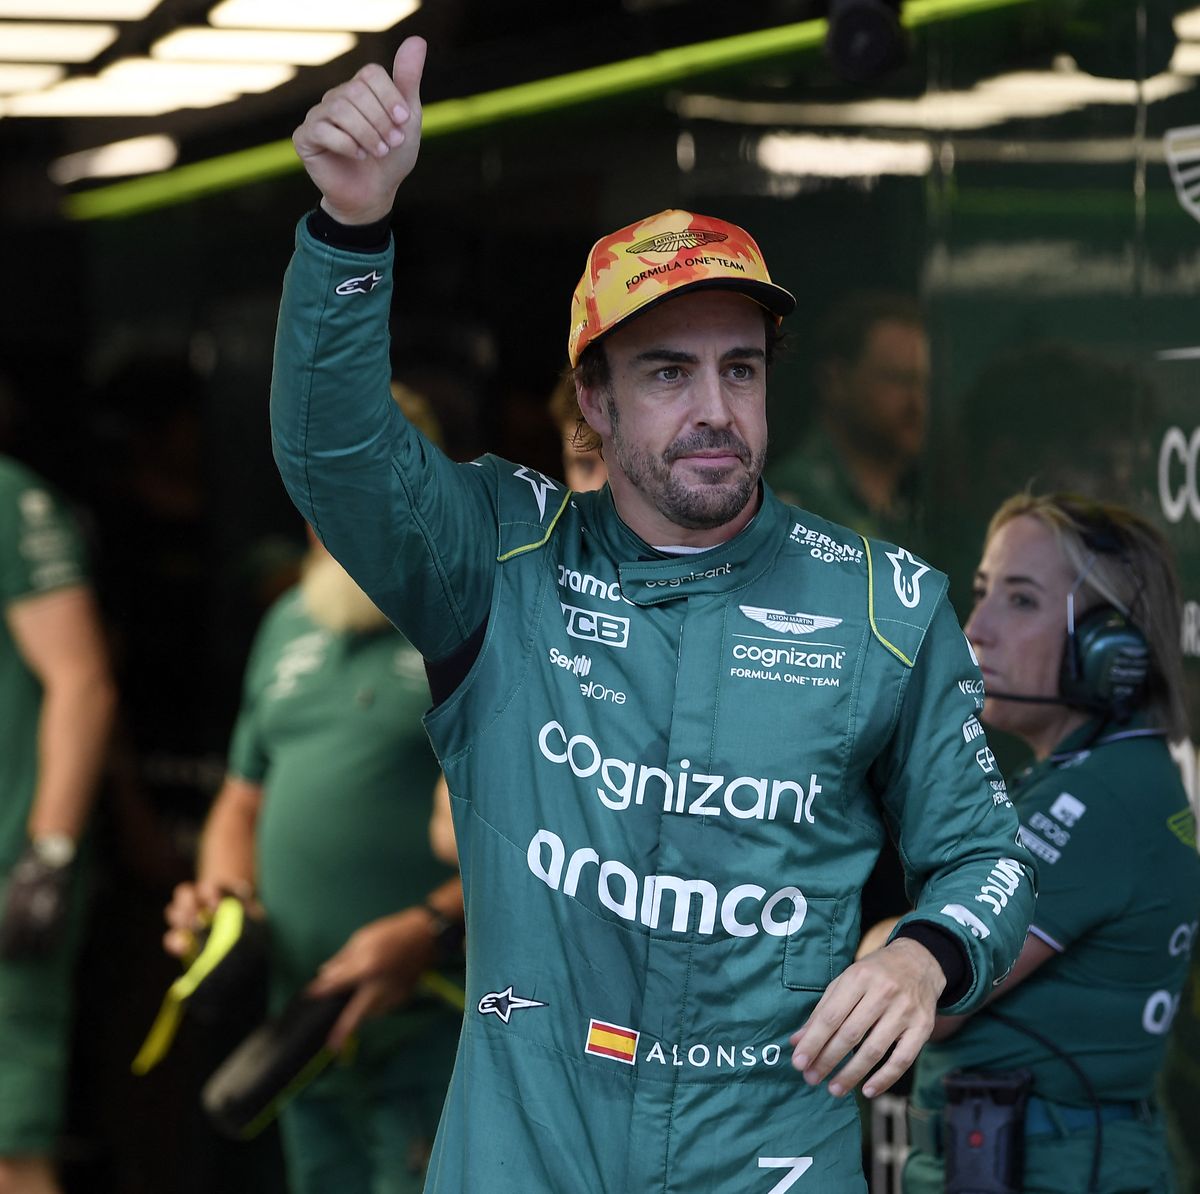 Podrás conocer a Alonso: las iniciativas de Aston Martin F1 en Barcelona